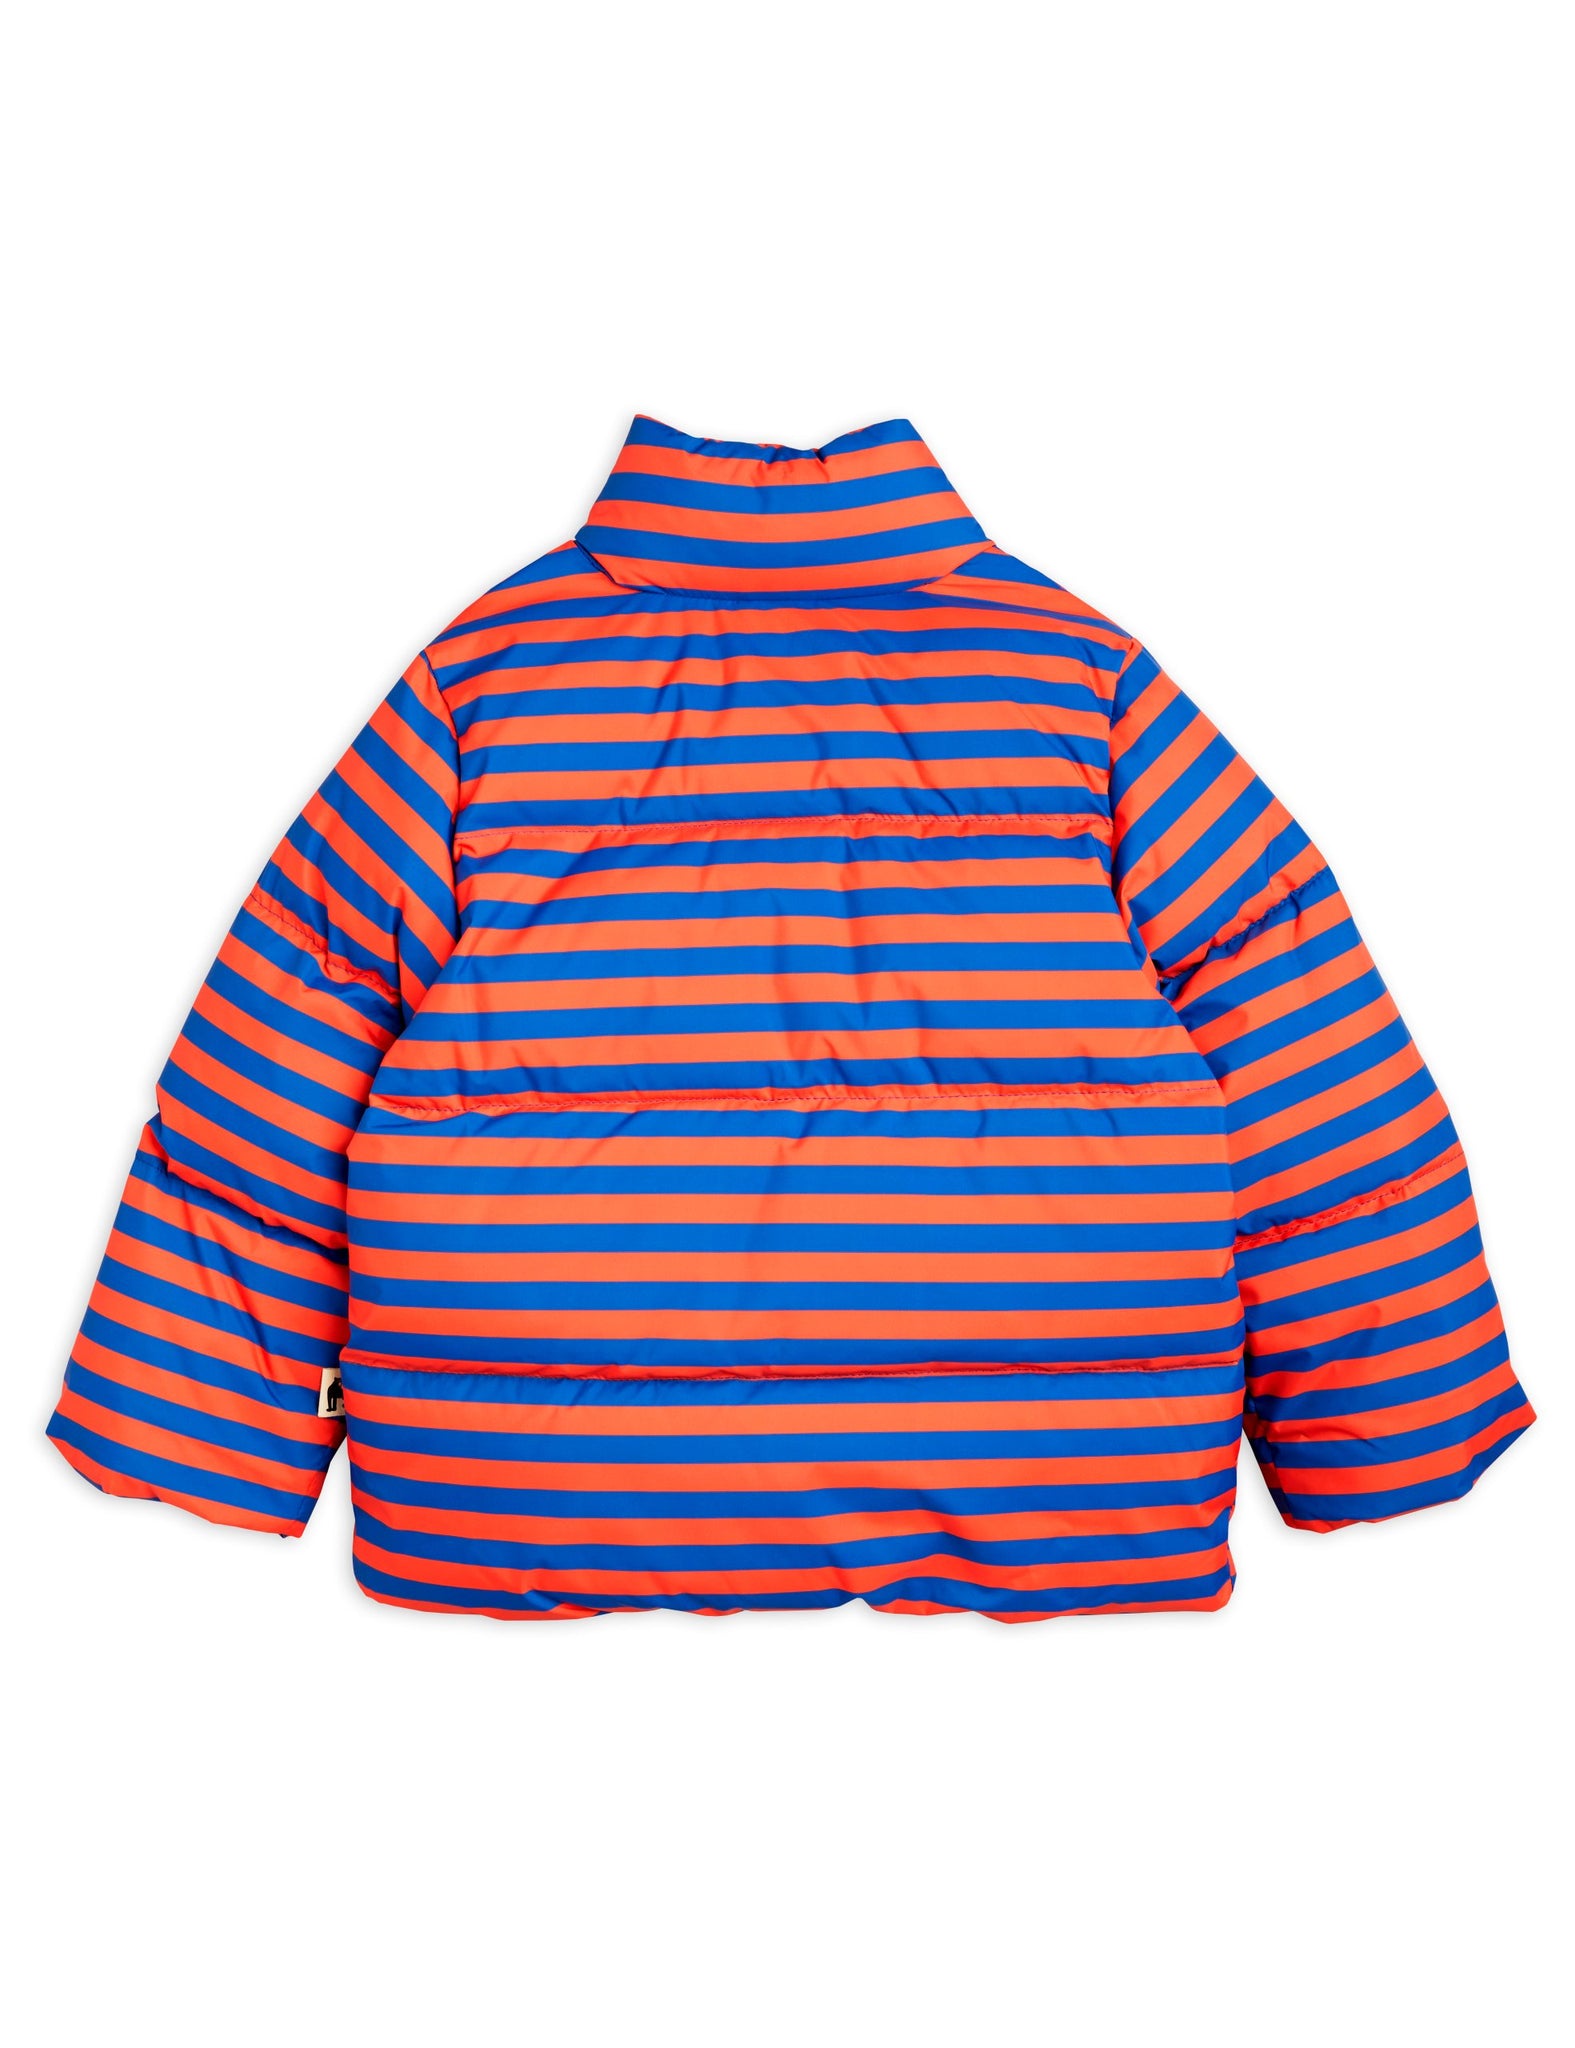 Stripe aop city puffer jacket